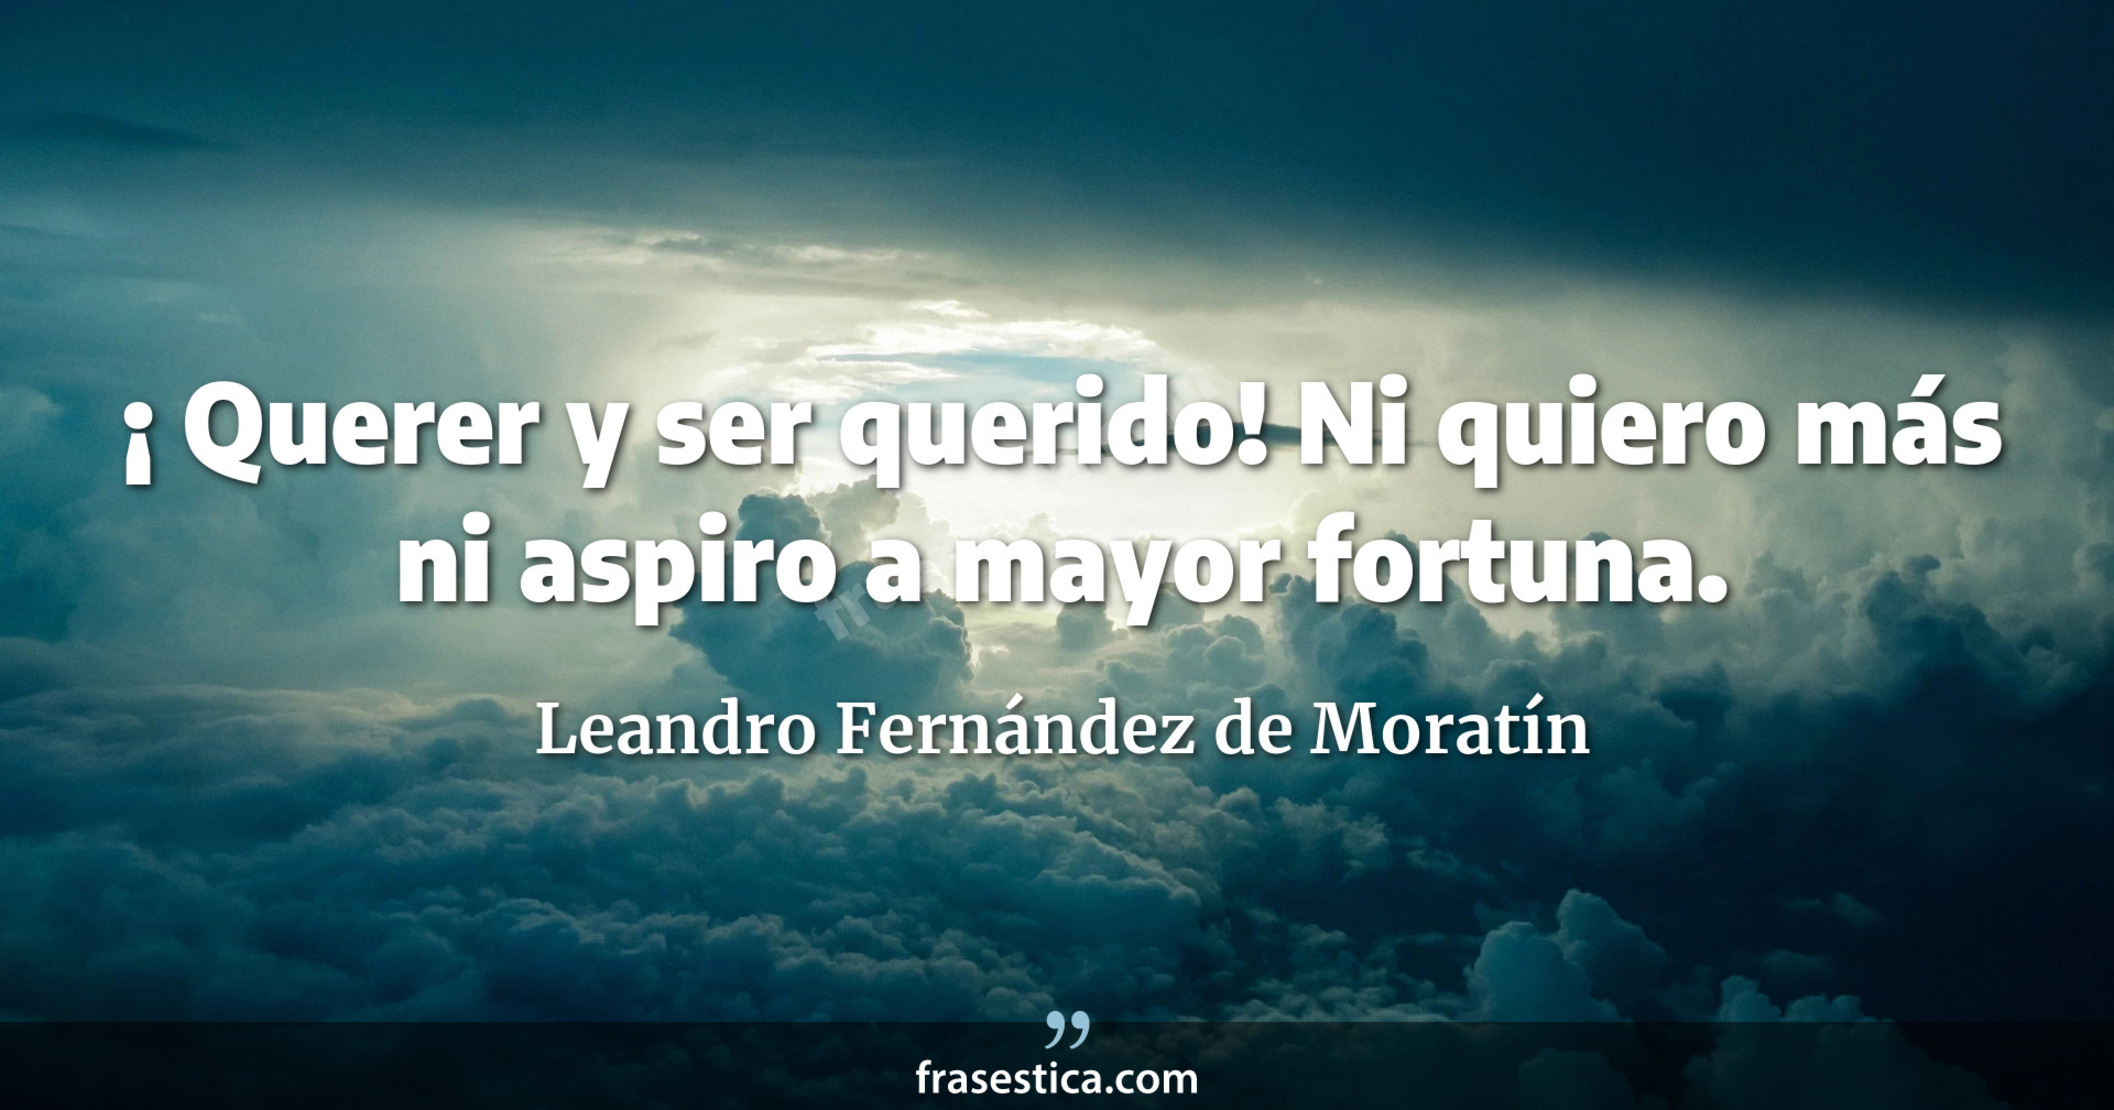 ¡ Querer y ser querido! Ni quiero más ni aspiro a mayor fortuna. - Leandro Fernández de Moratín